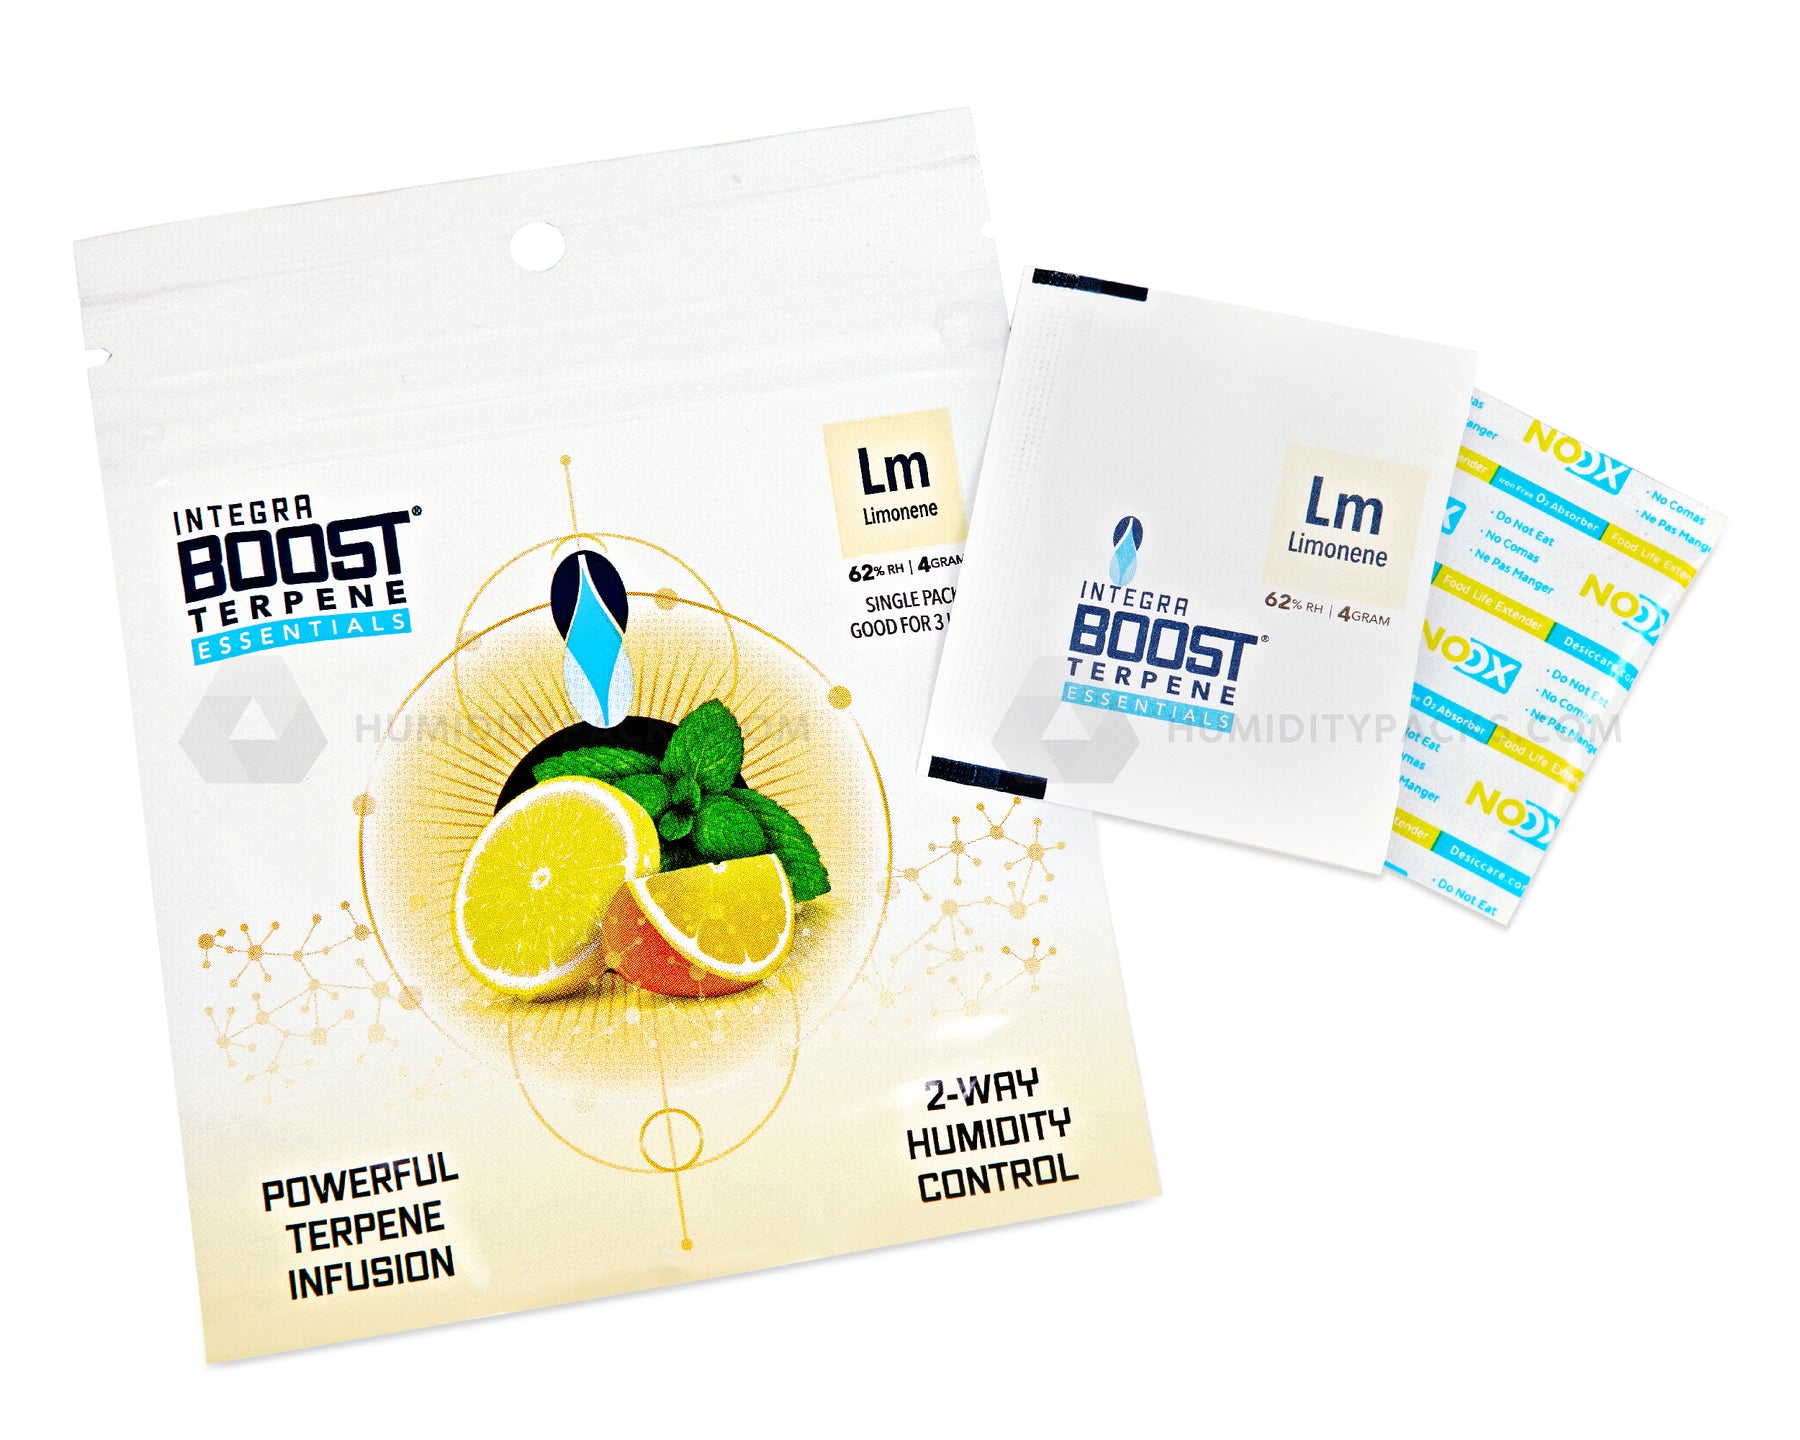 Integra Boost 4 Gram 2-Way Terpene Essentials Limonene Humidity Packs (62%) 48-Box Humidity Packs - 6